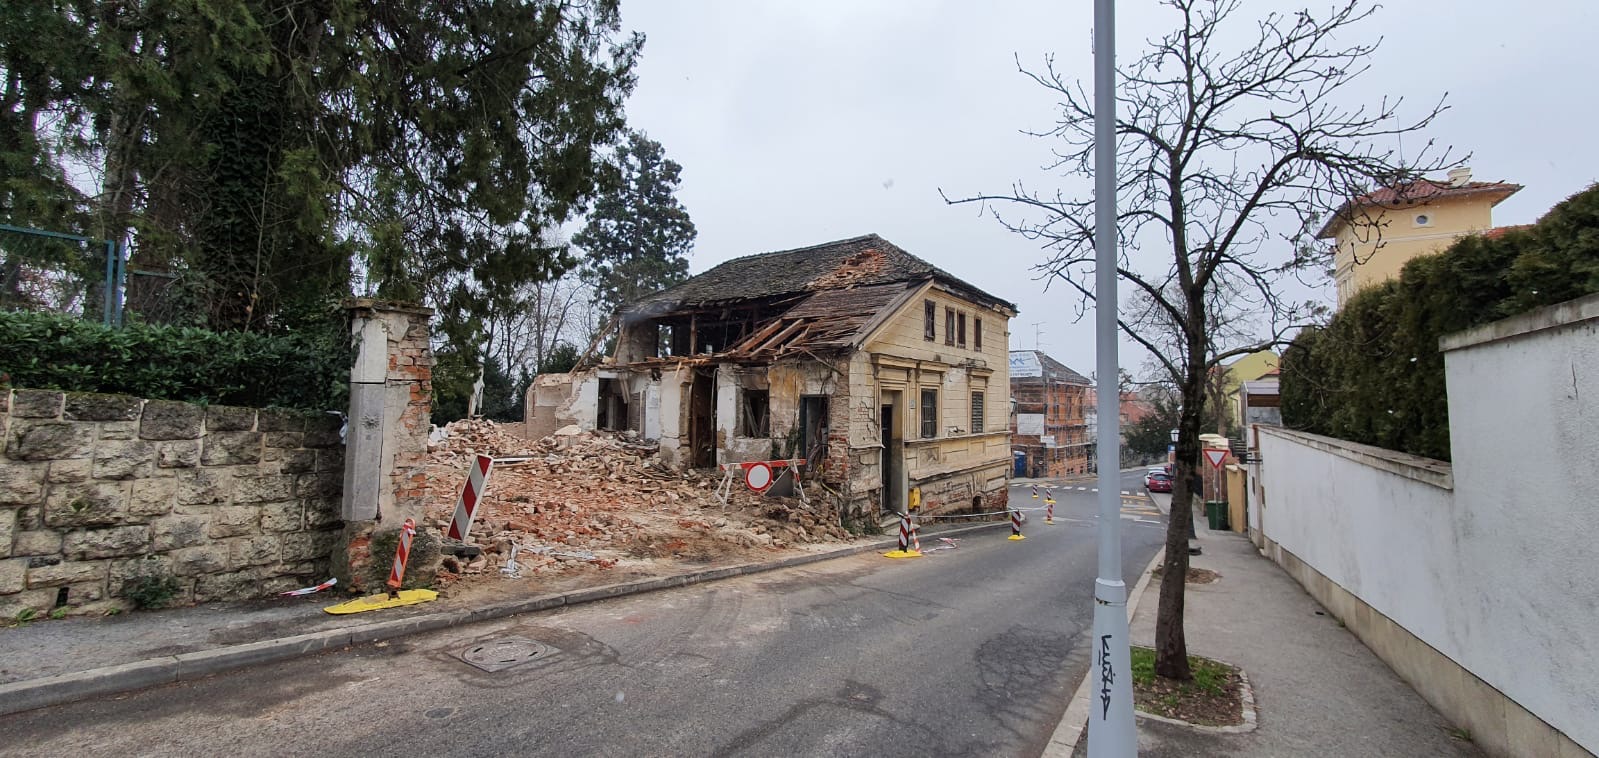 Počelo je rušenje kuće Mlinarich, jedne od najstarijih u Zagrebu.